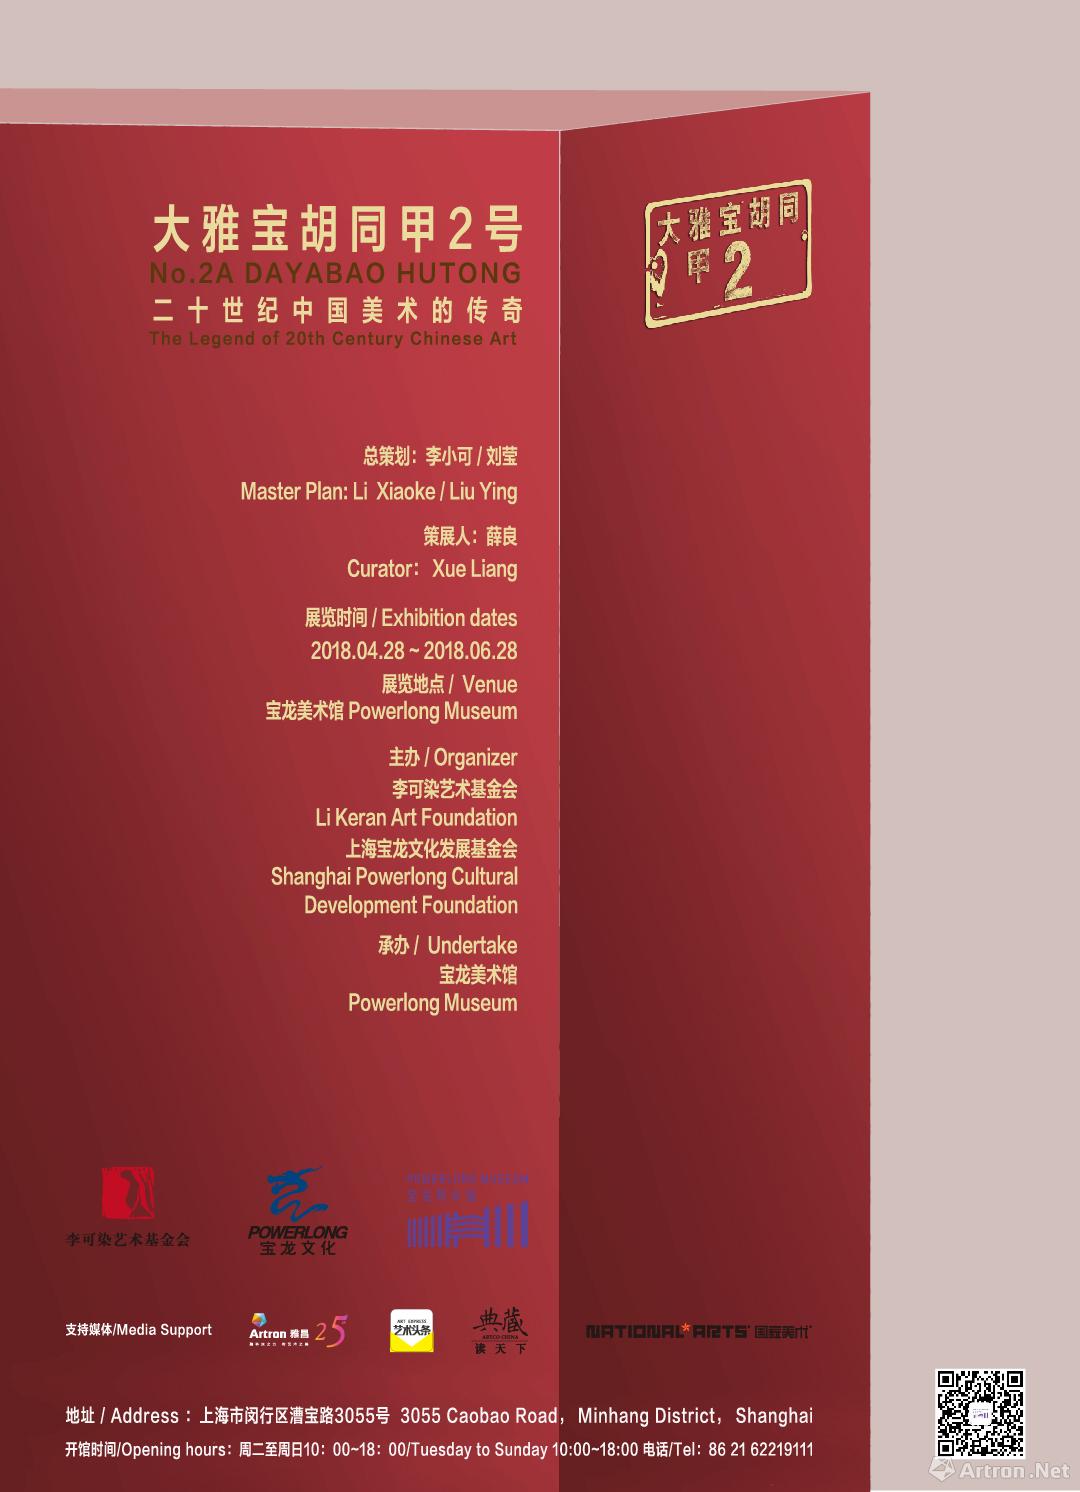 “大雅宝胡同甲2号”二十世纪中国美术的传奇